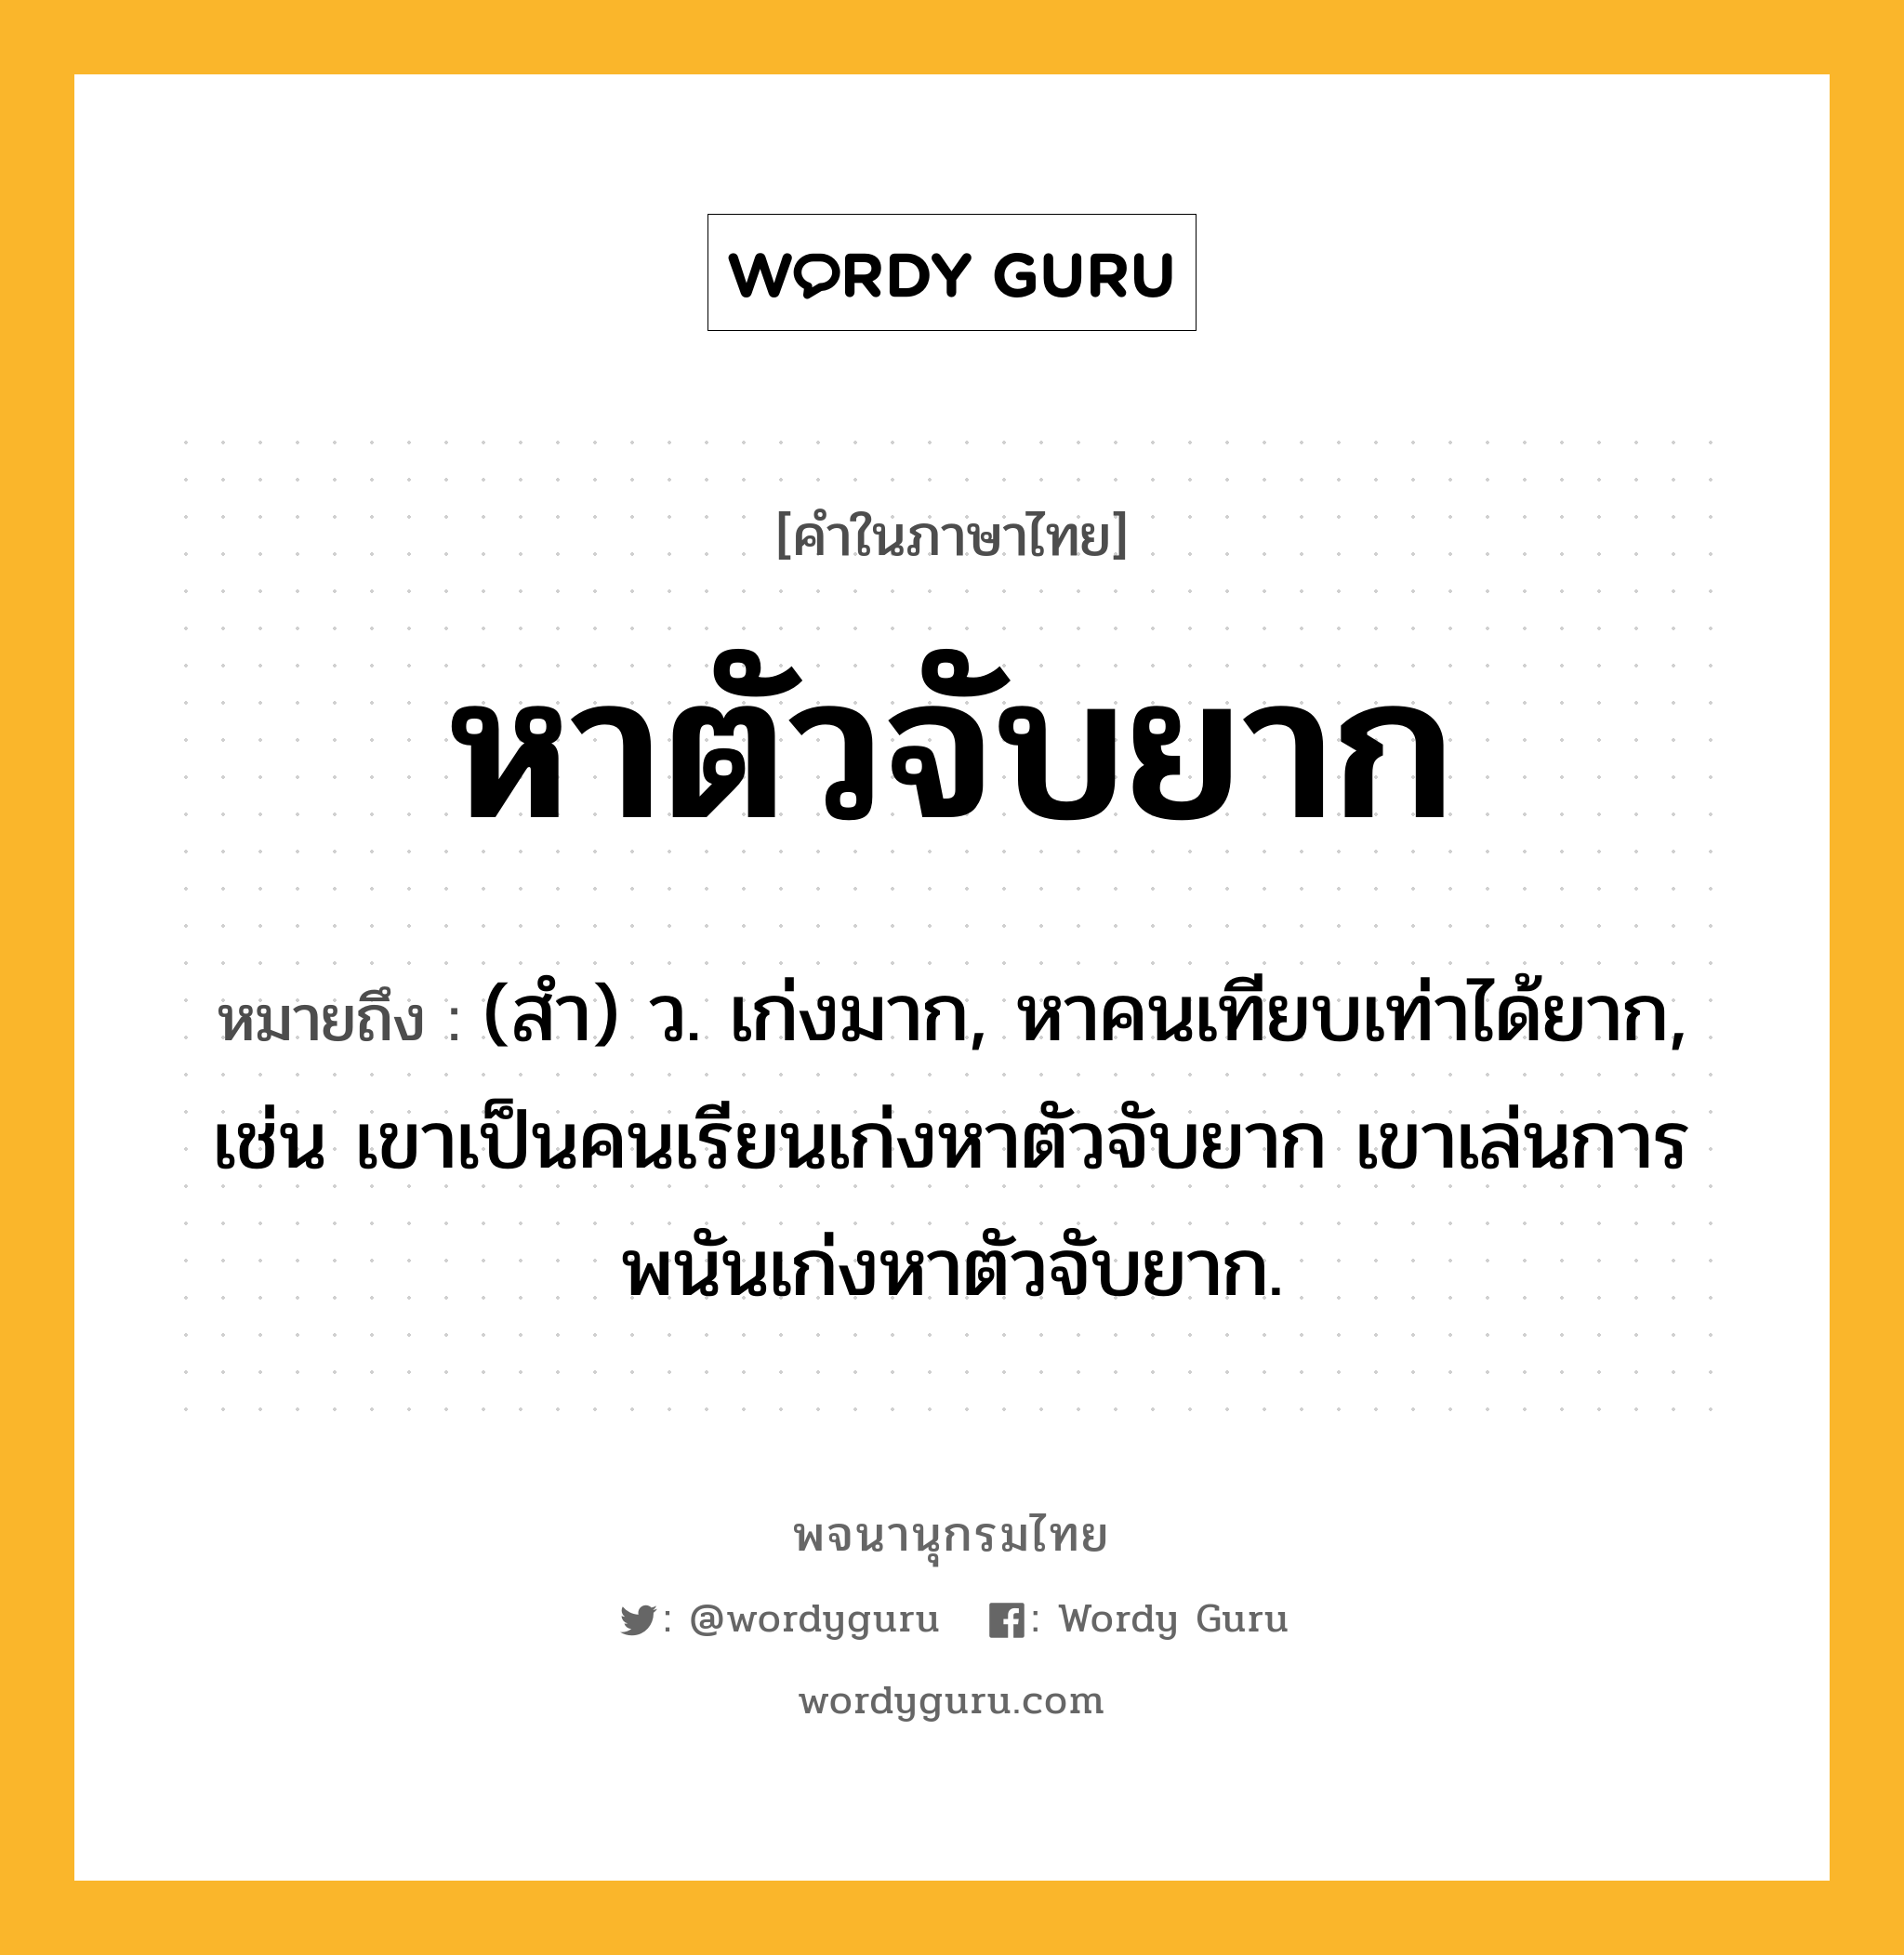 หาตัวจับยาก หมายถึงอะไร?, คำในภาษาไทย หาตัวจับยาก หมายถึง (สํา) ว. เก่งมาก, หาคนเทียบเท่าได้ยาก, เช่น เขาเป็นคนเรียนเก่งหาตัวจับยาก เขาเล่นการพนันเก่งหาตัวจับยาก.